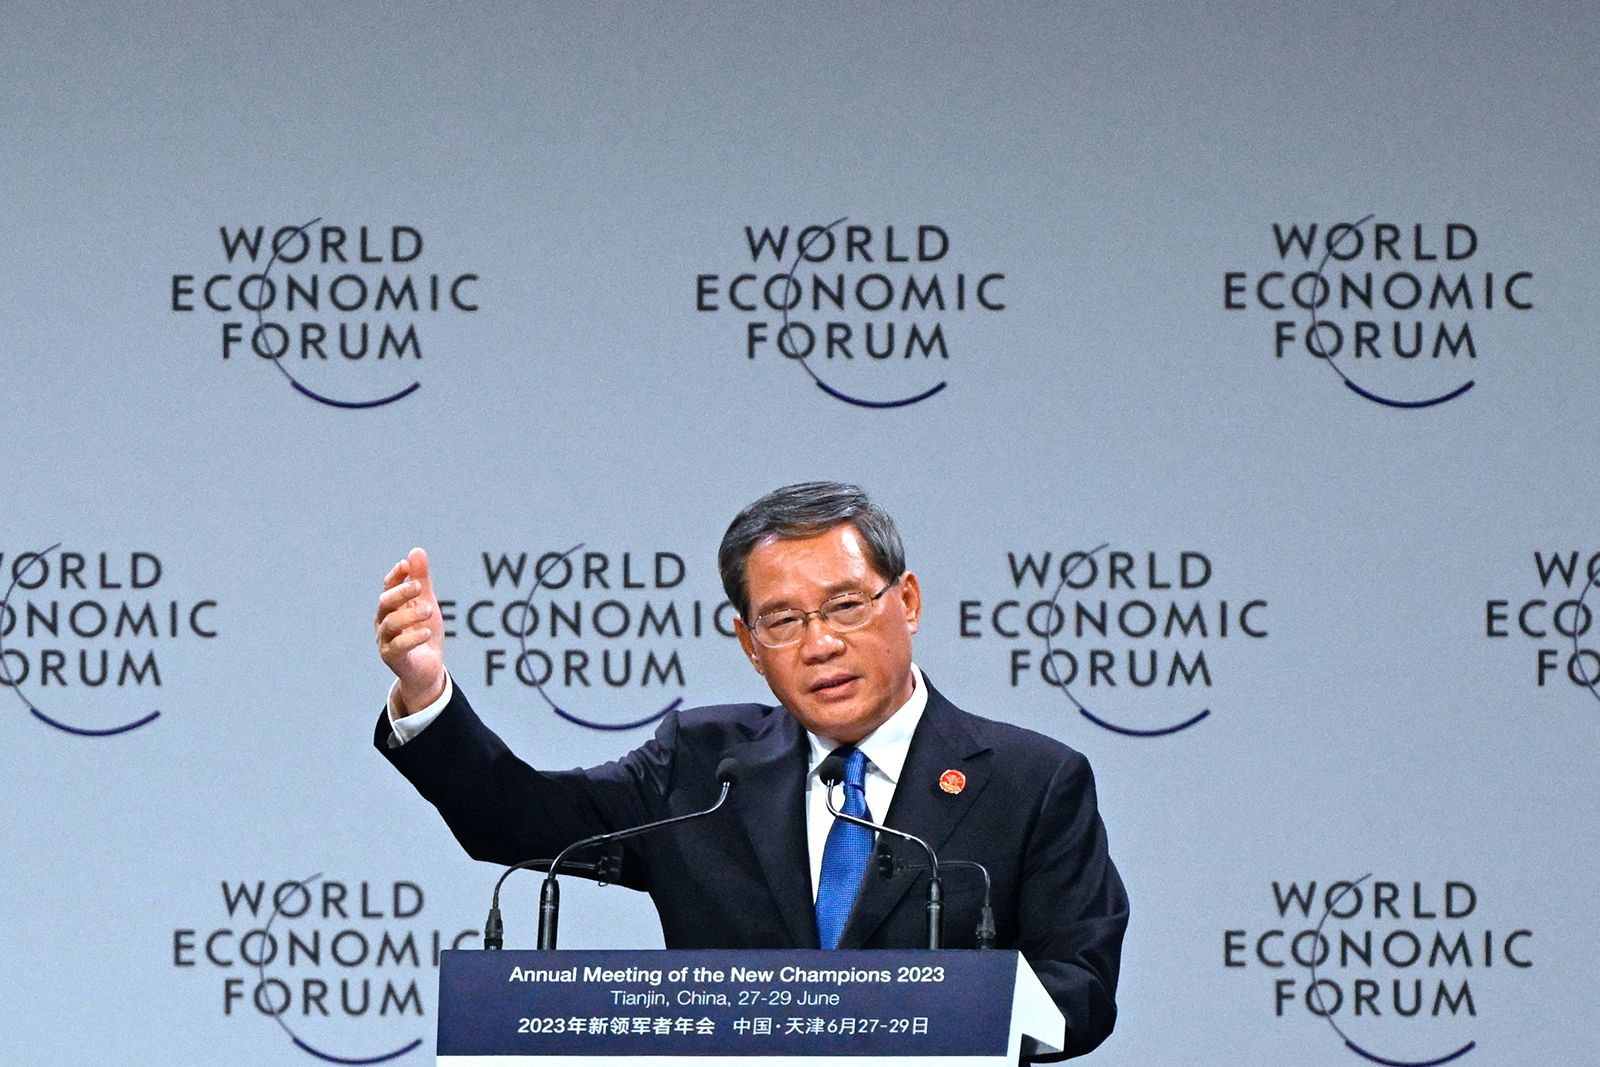 Le premier ministre chinois Li Qiang prend la parole lors de l'ouverture de la réunion annuelle des nouveaux champions du Forum économique mondial à Tianjin le 27 juin 2023.